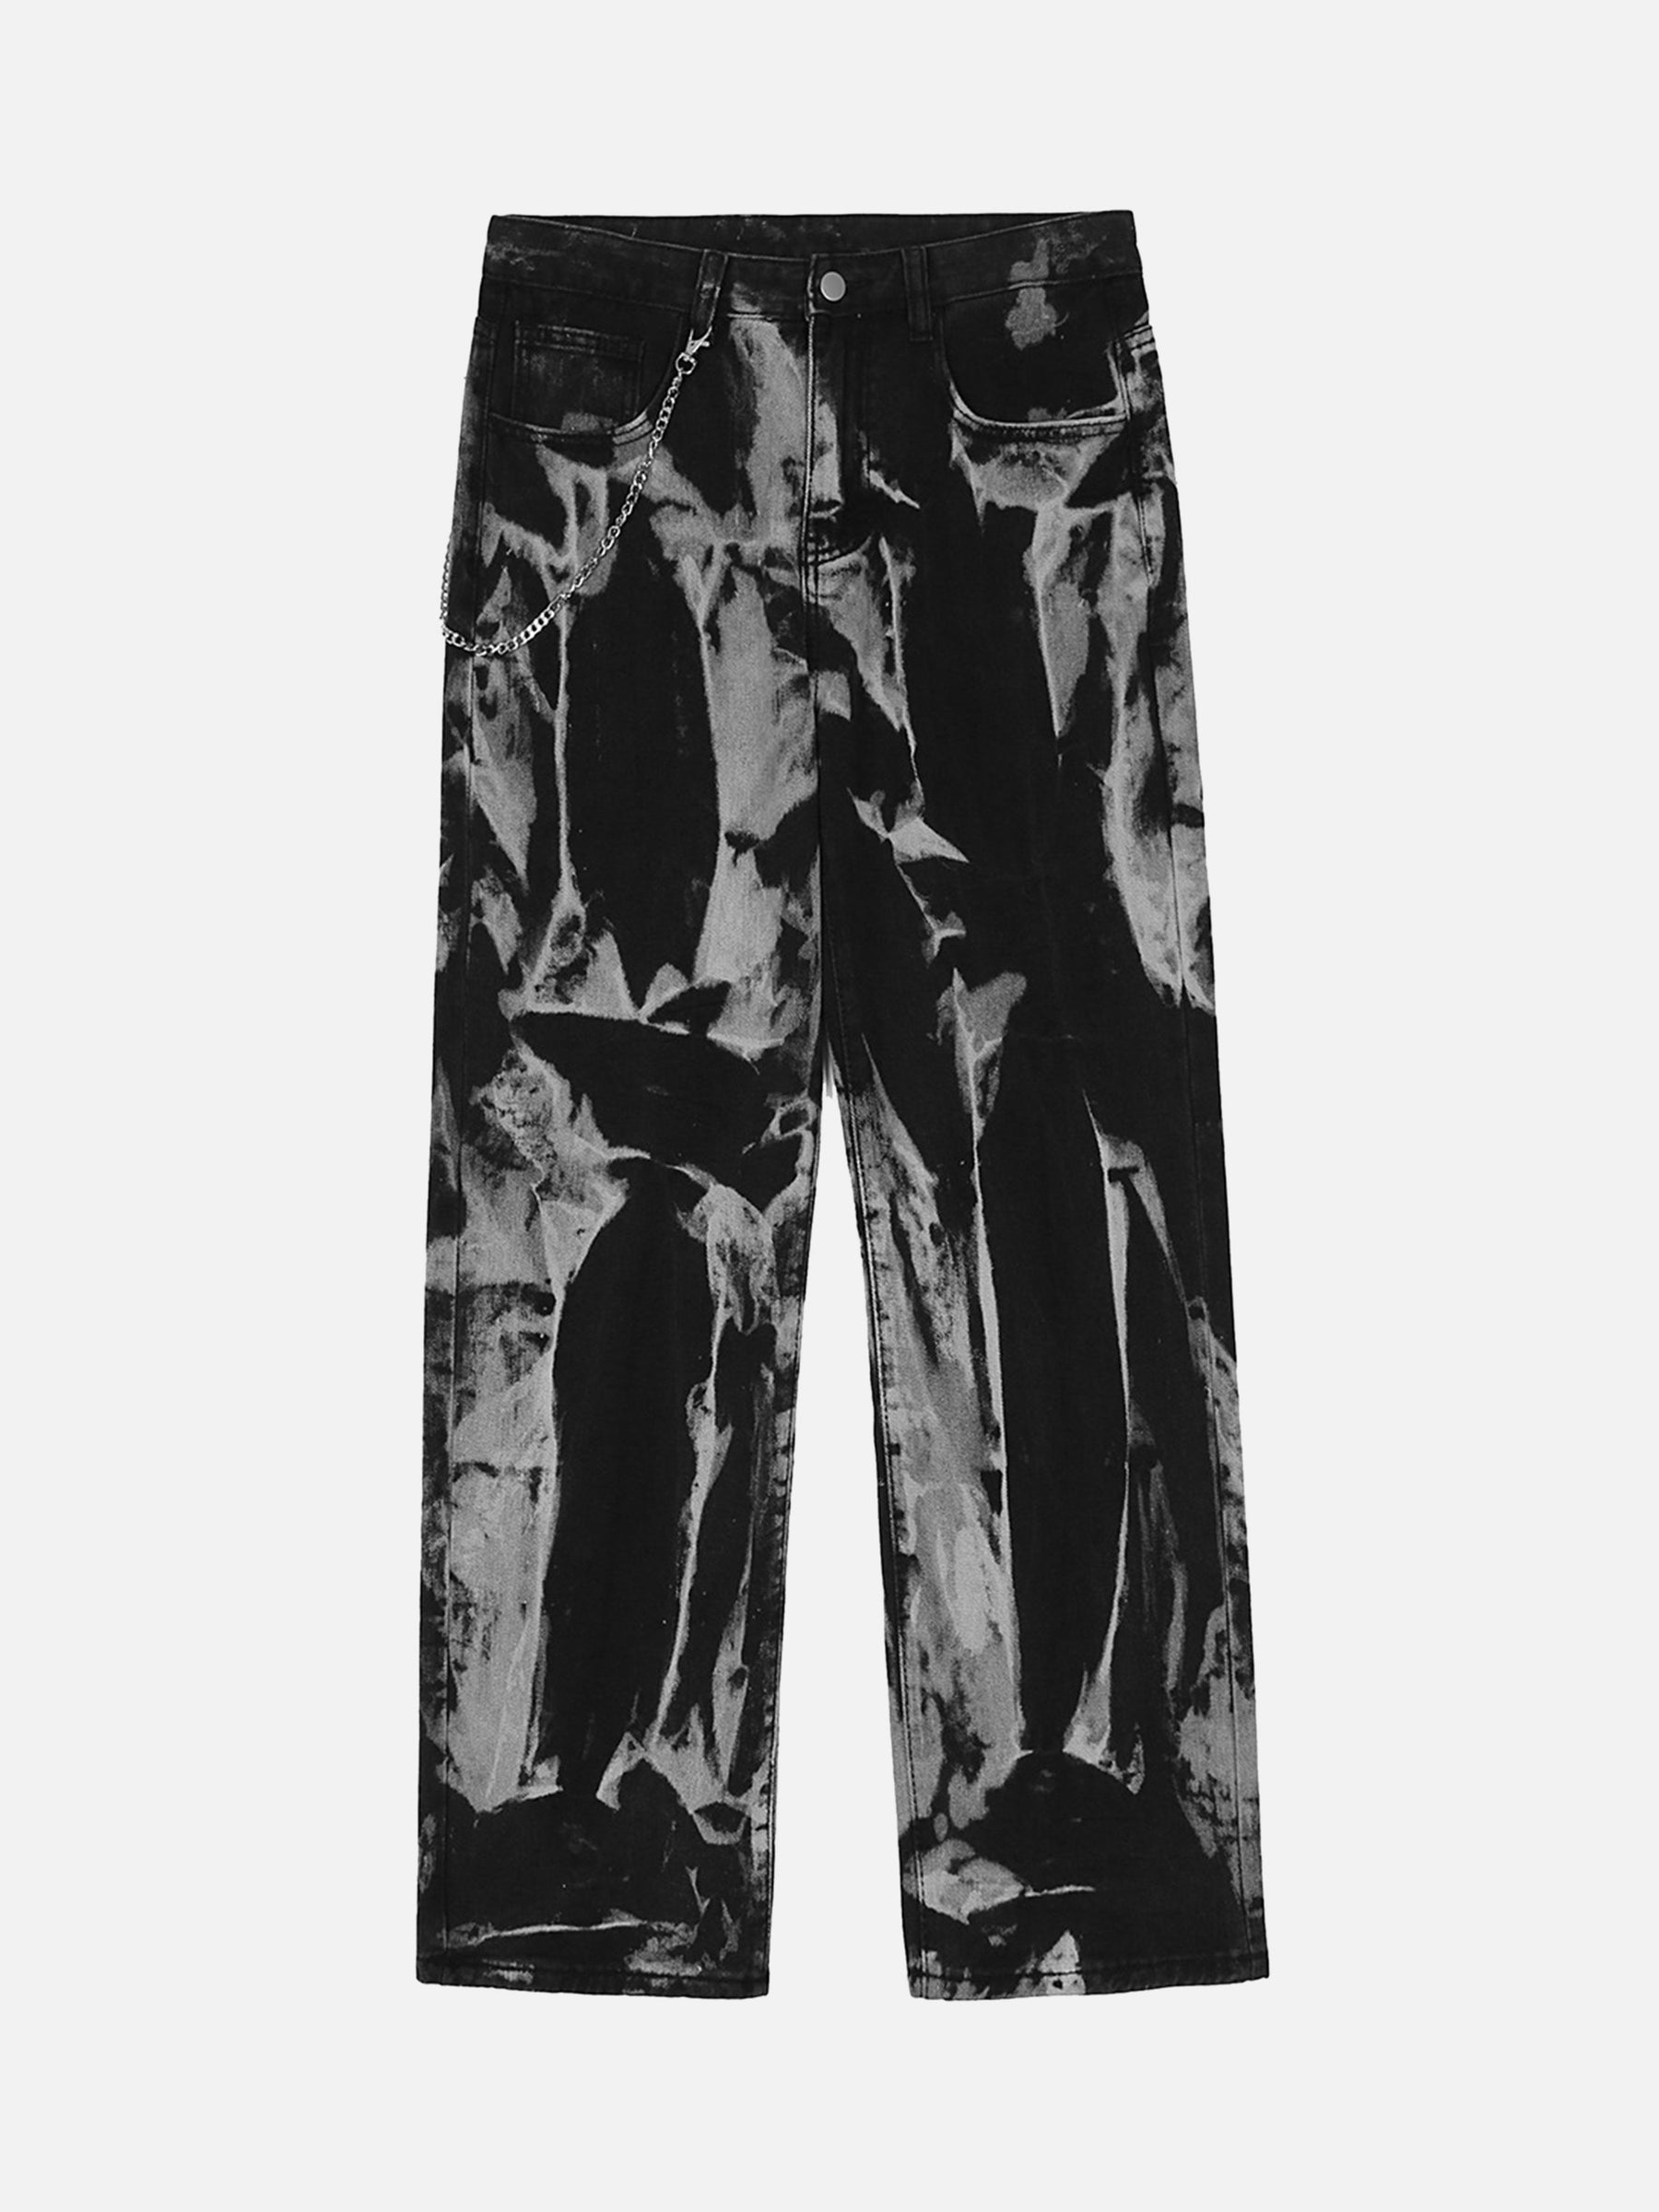 LUXENFY™ - Tie-Dye Graffiti Jeans luxenfy.com